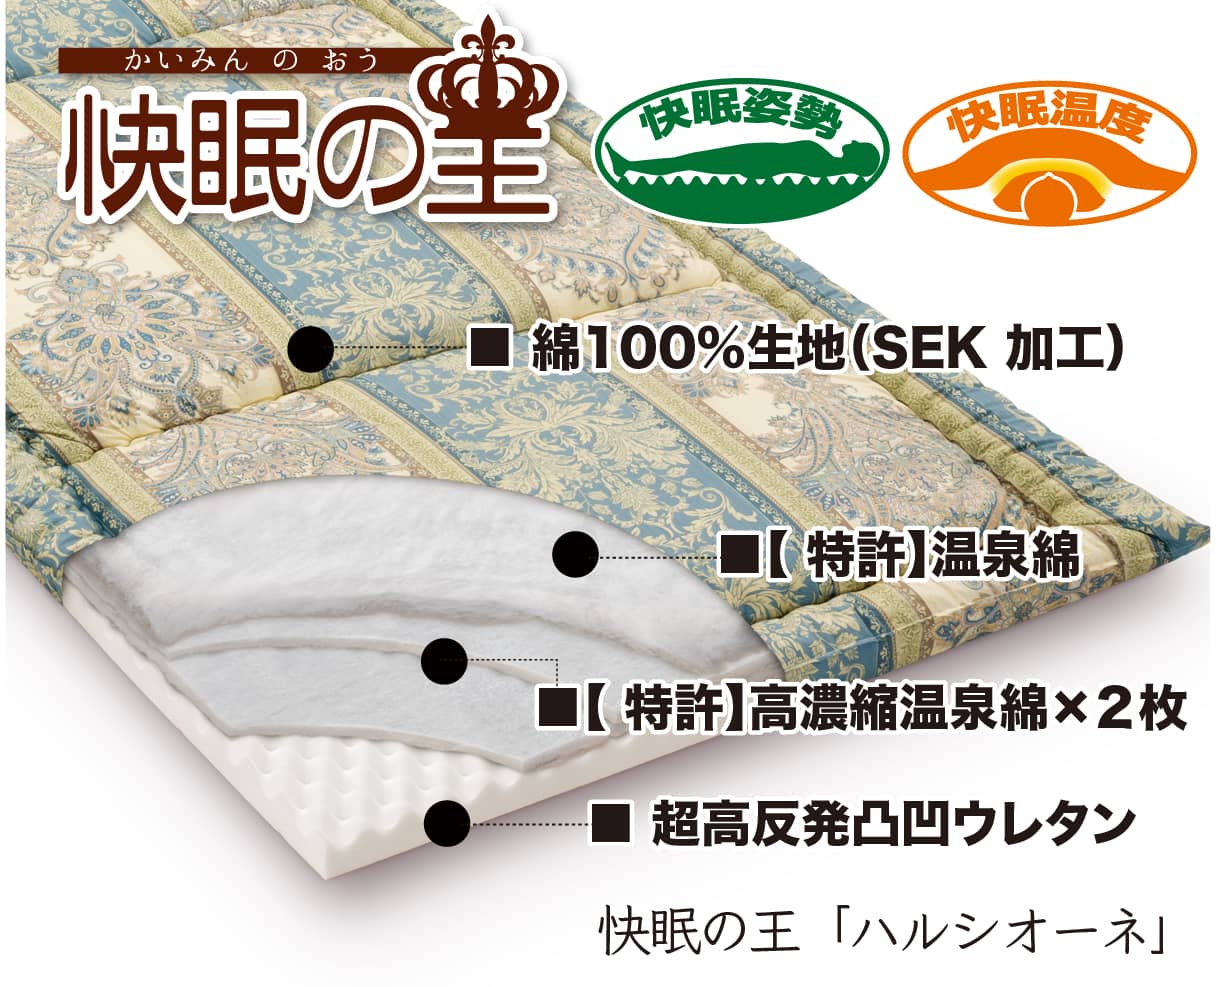 無料サンプルキット、健康新素材【特許】温泉綿ヘルシー安眠スタイルの敷布団に使われています。